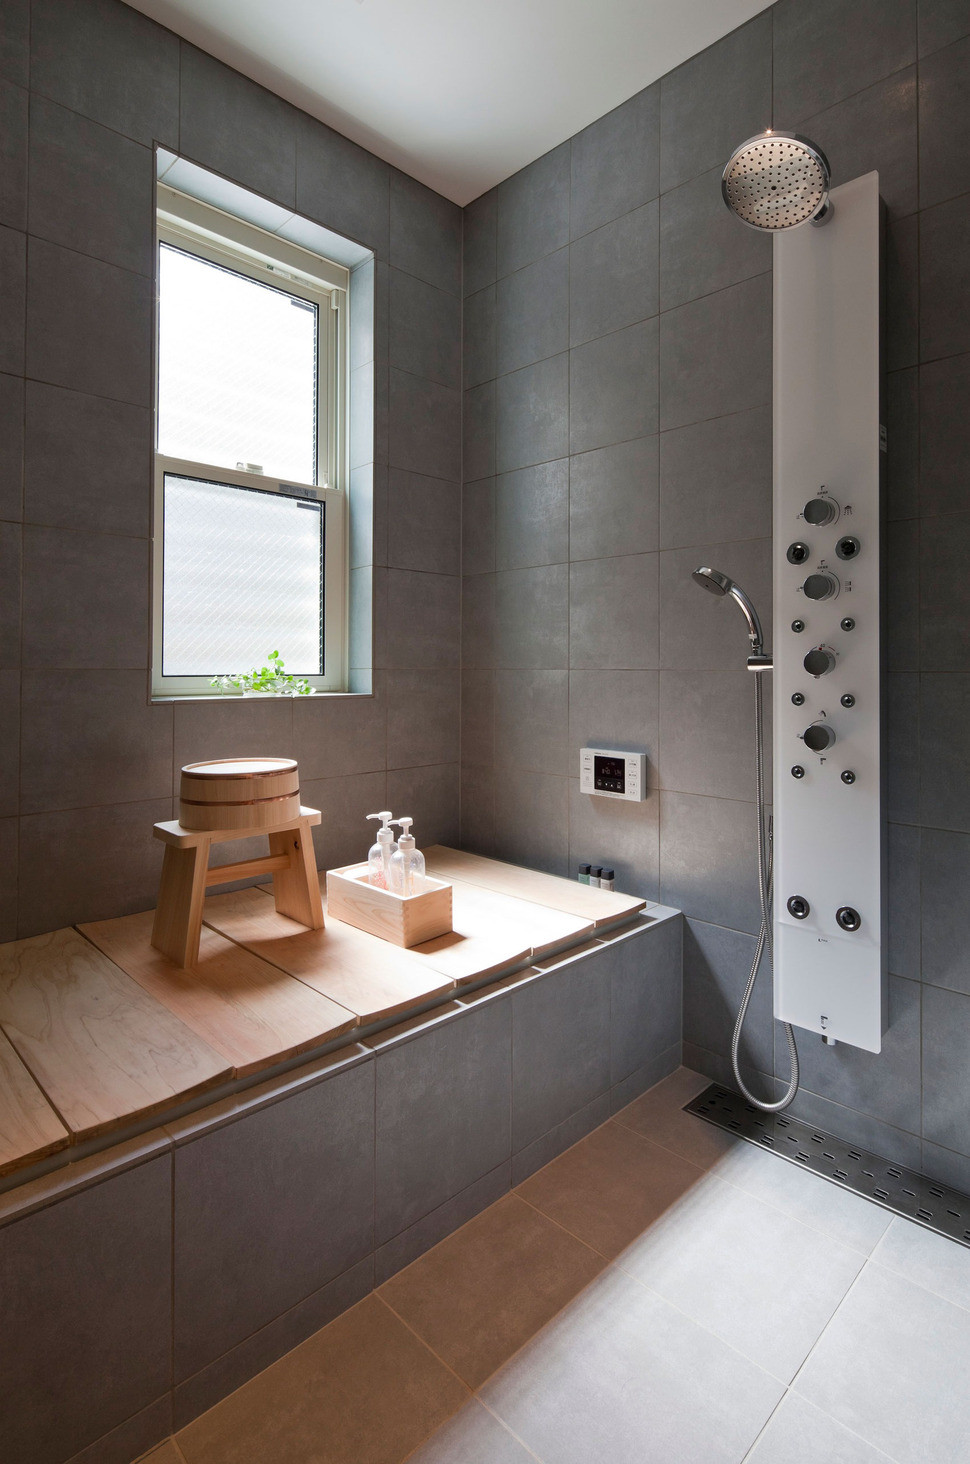 Japanese Bathroom Design
 pact Zen Home Full of Hidden Meanings